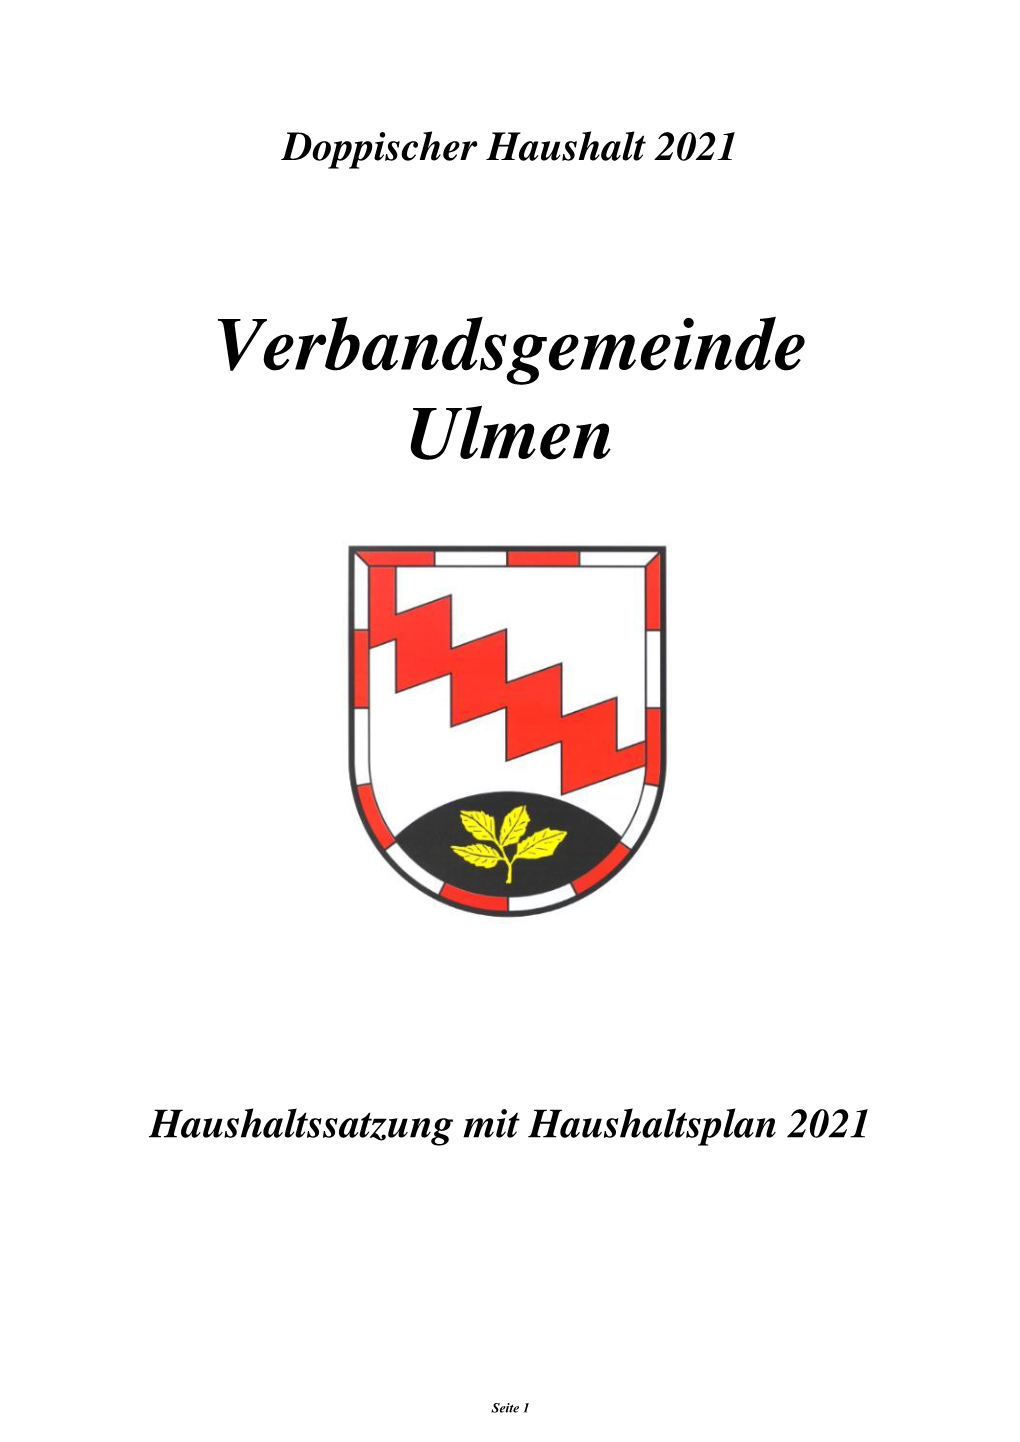 Verbandsgemeinde Ulmen